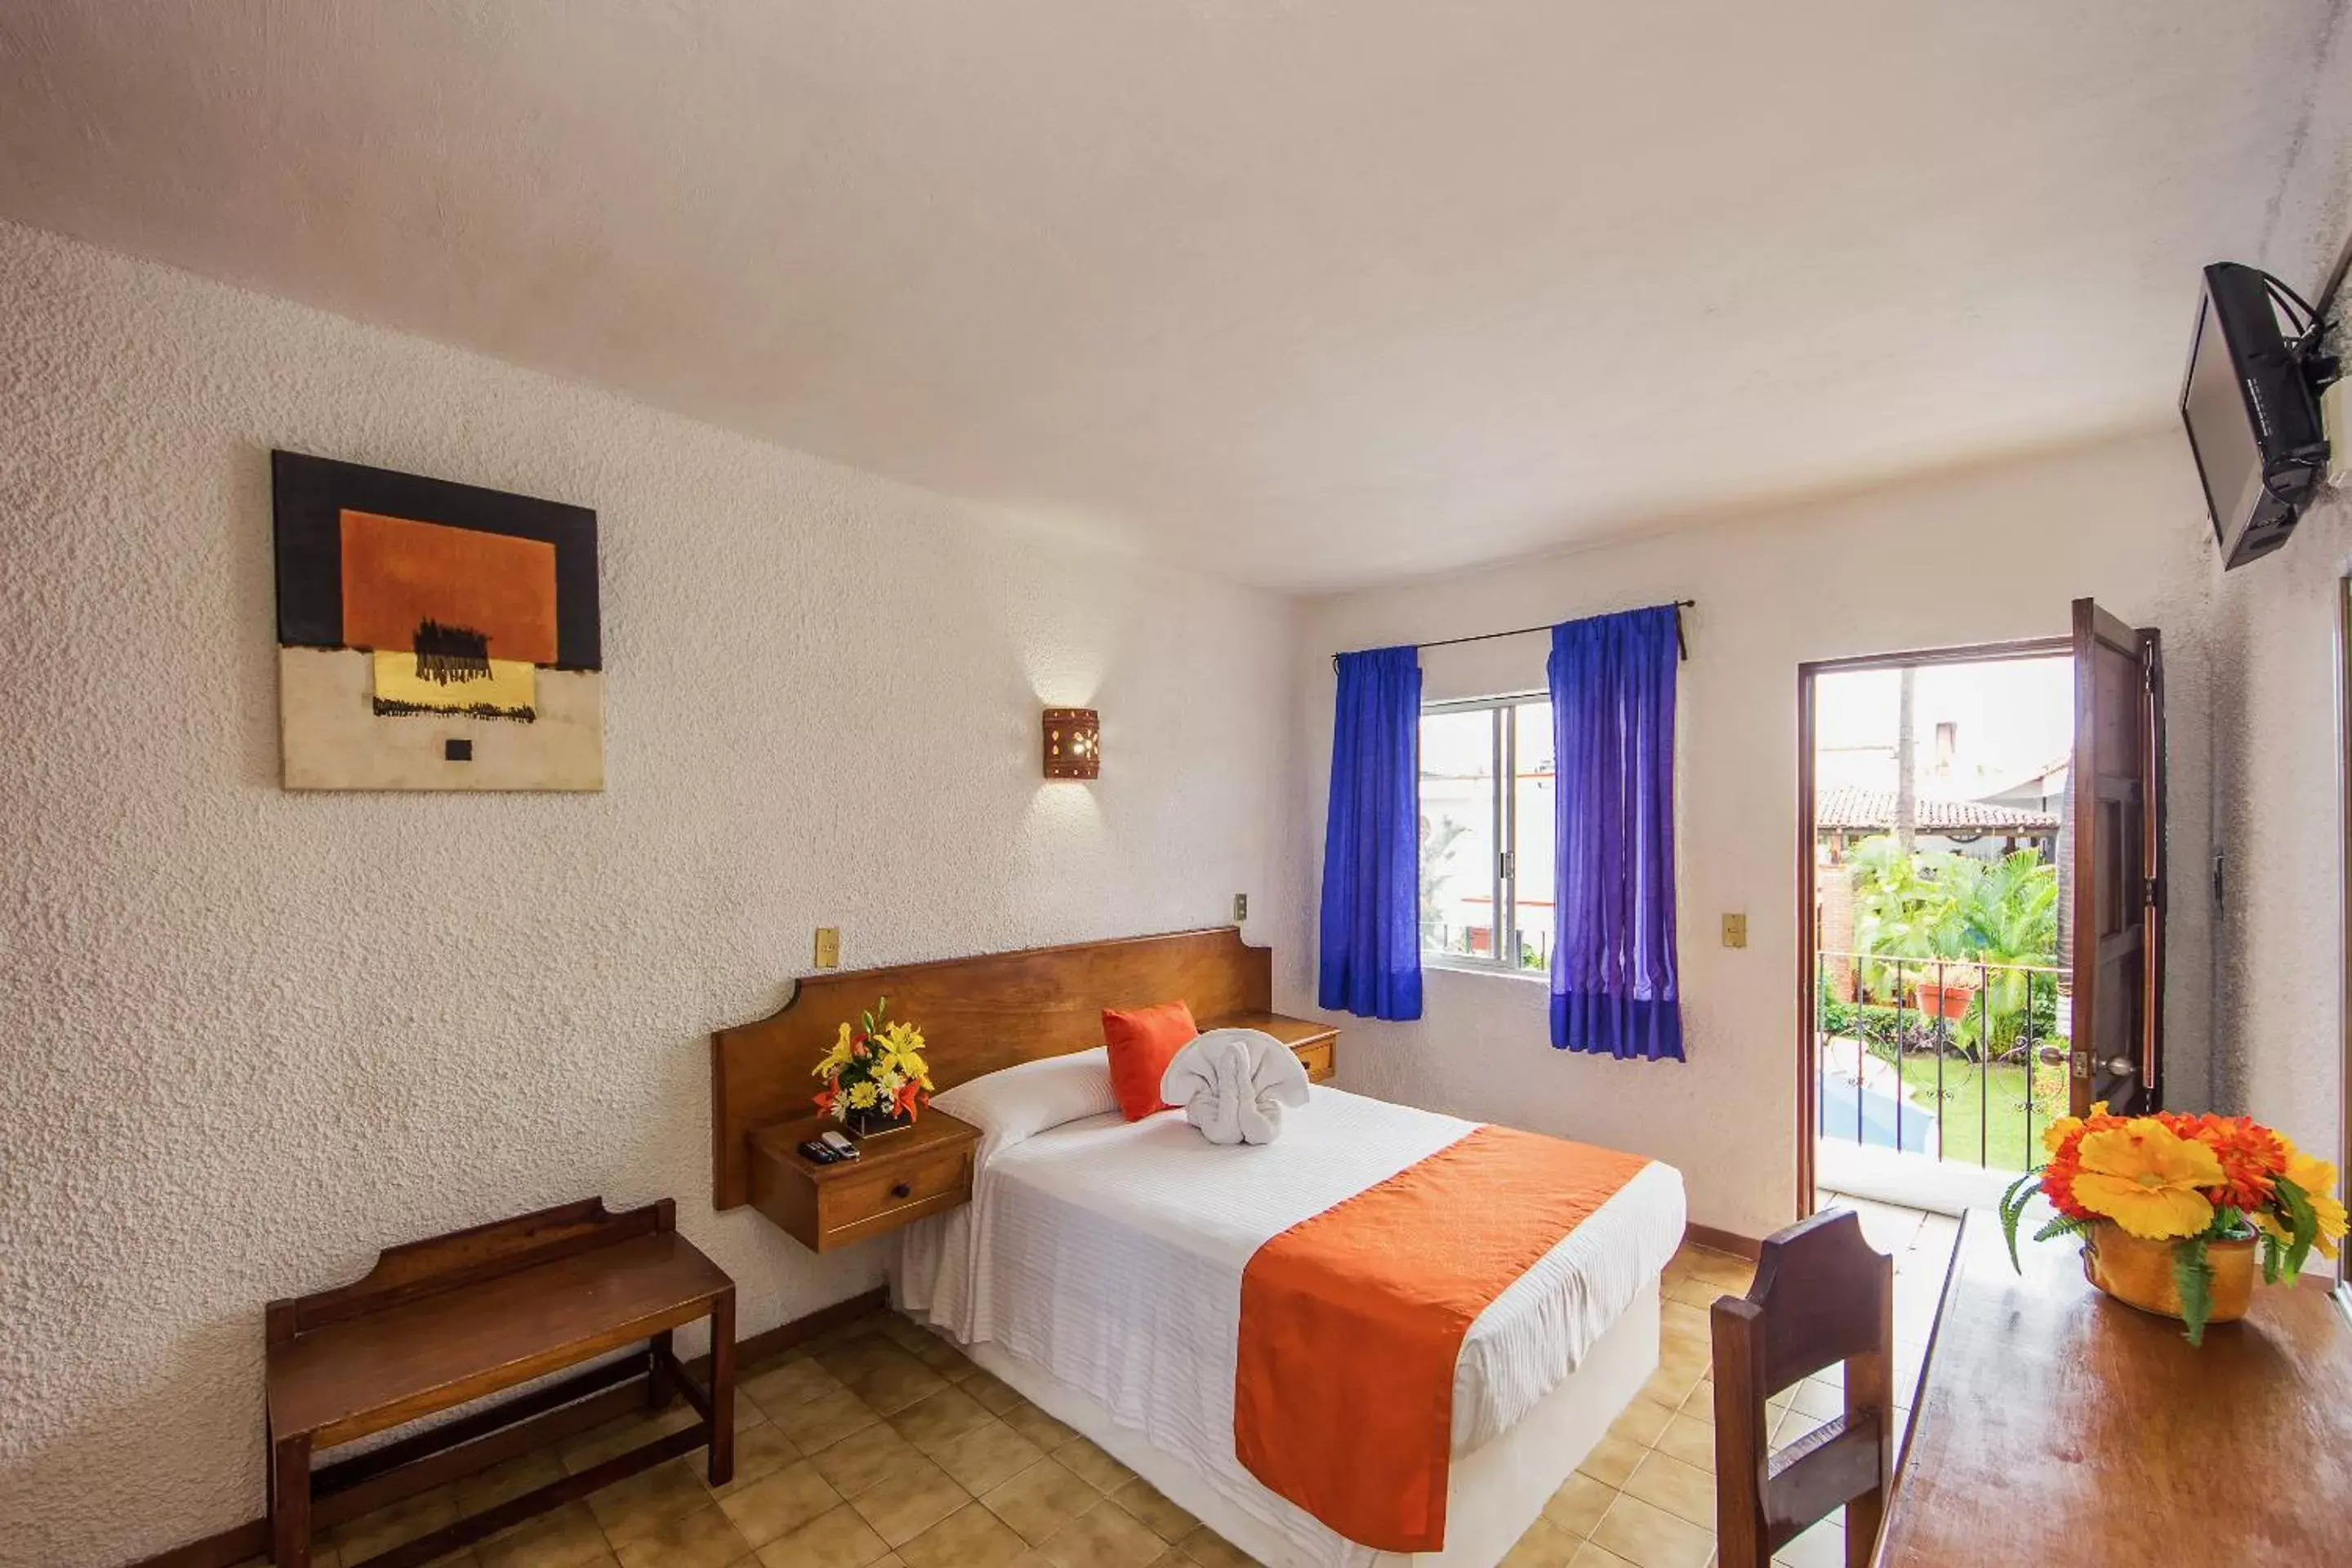 Bedroom, Room Photo in Hotel Hacienda Vallarta - Playa Las Glorias